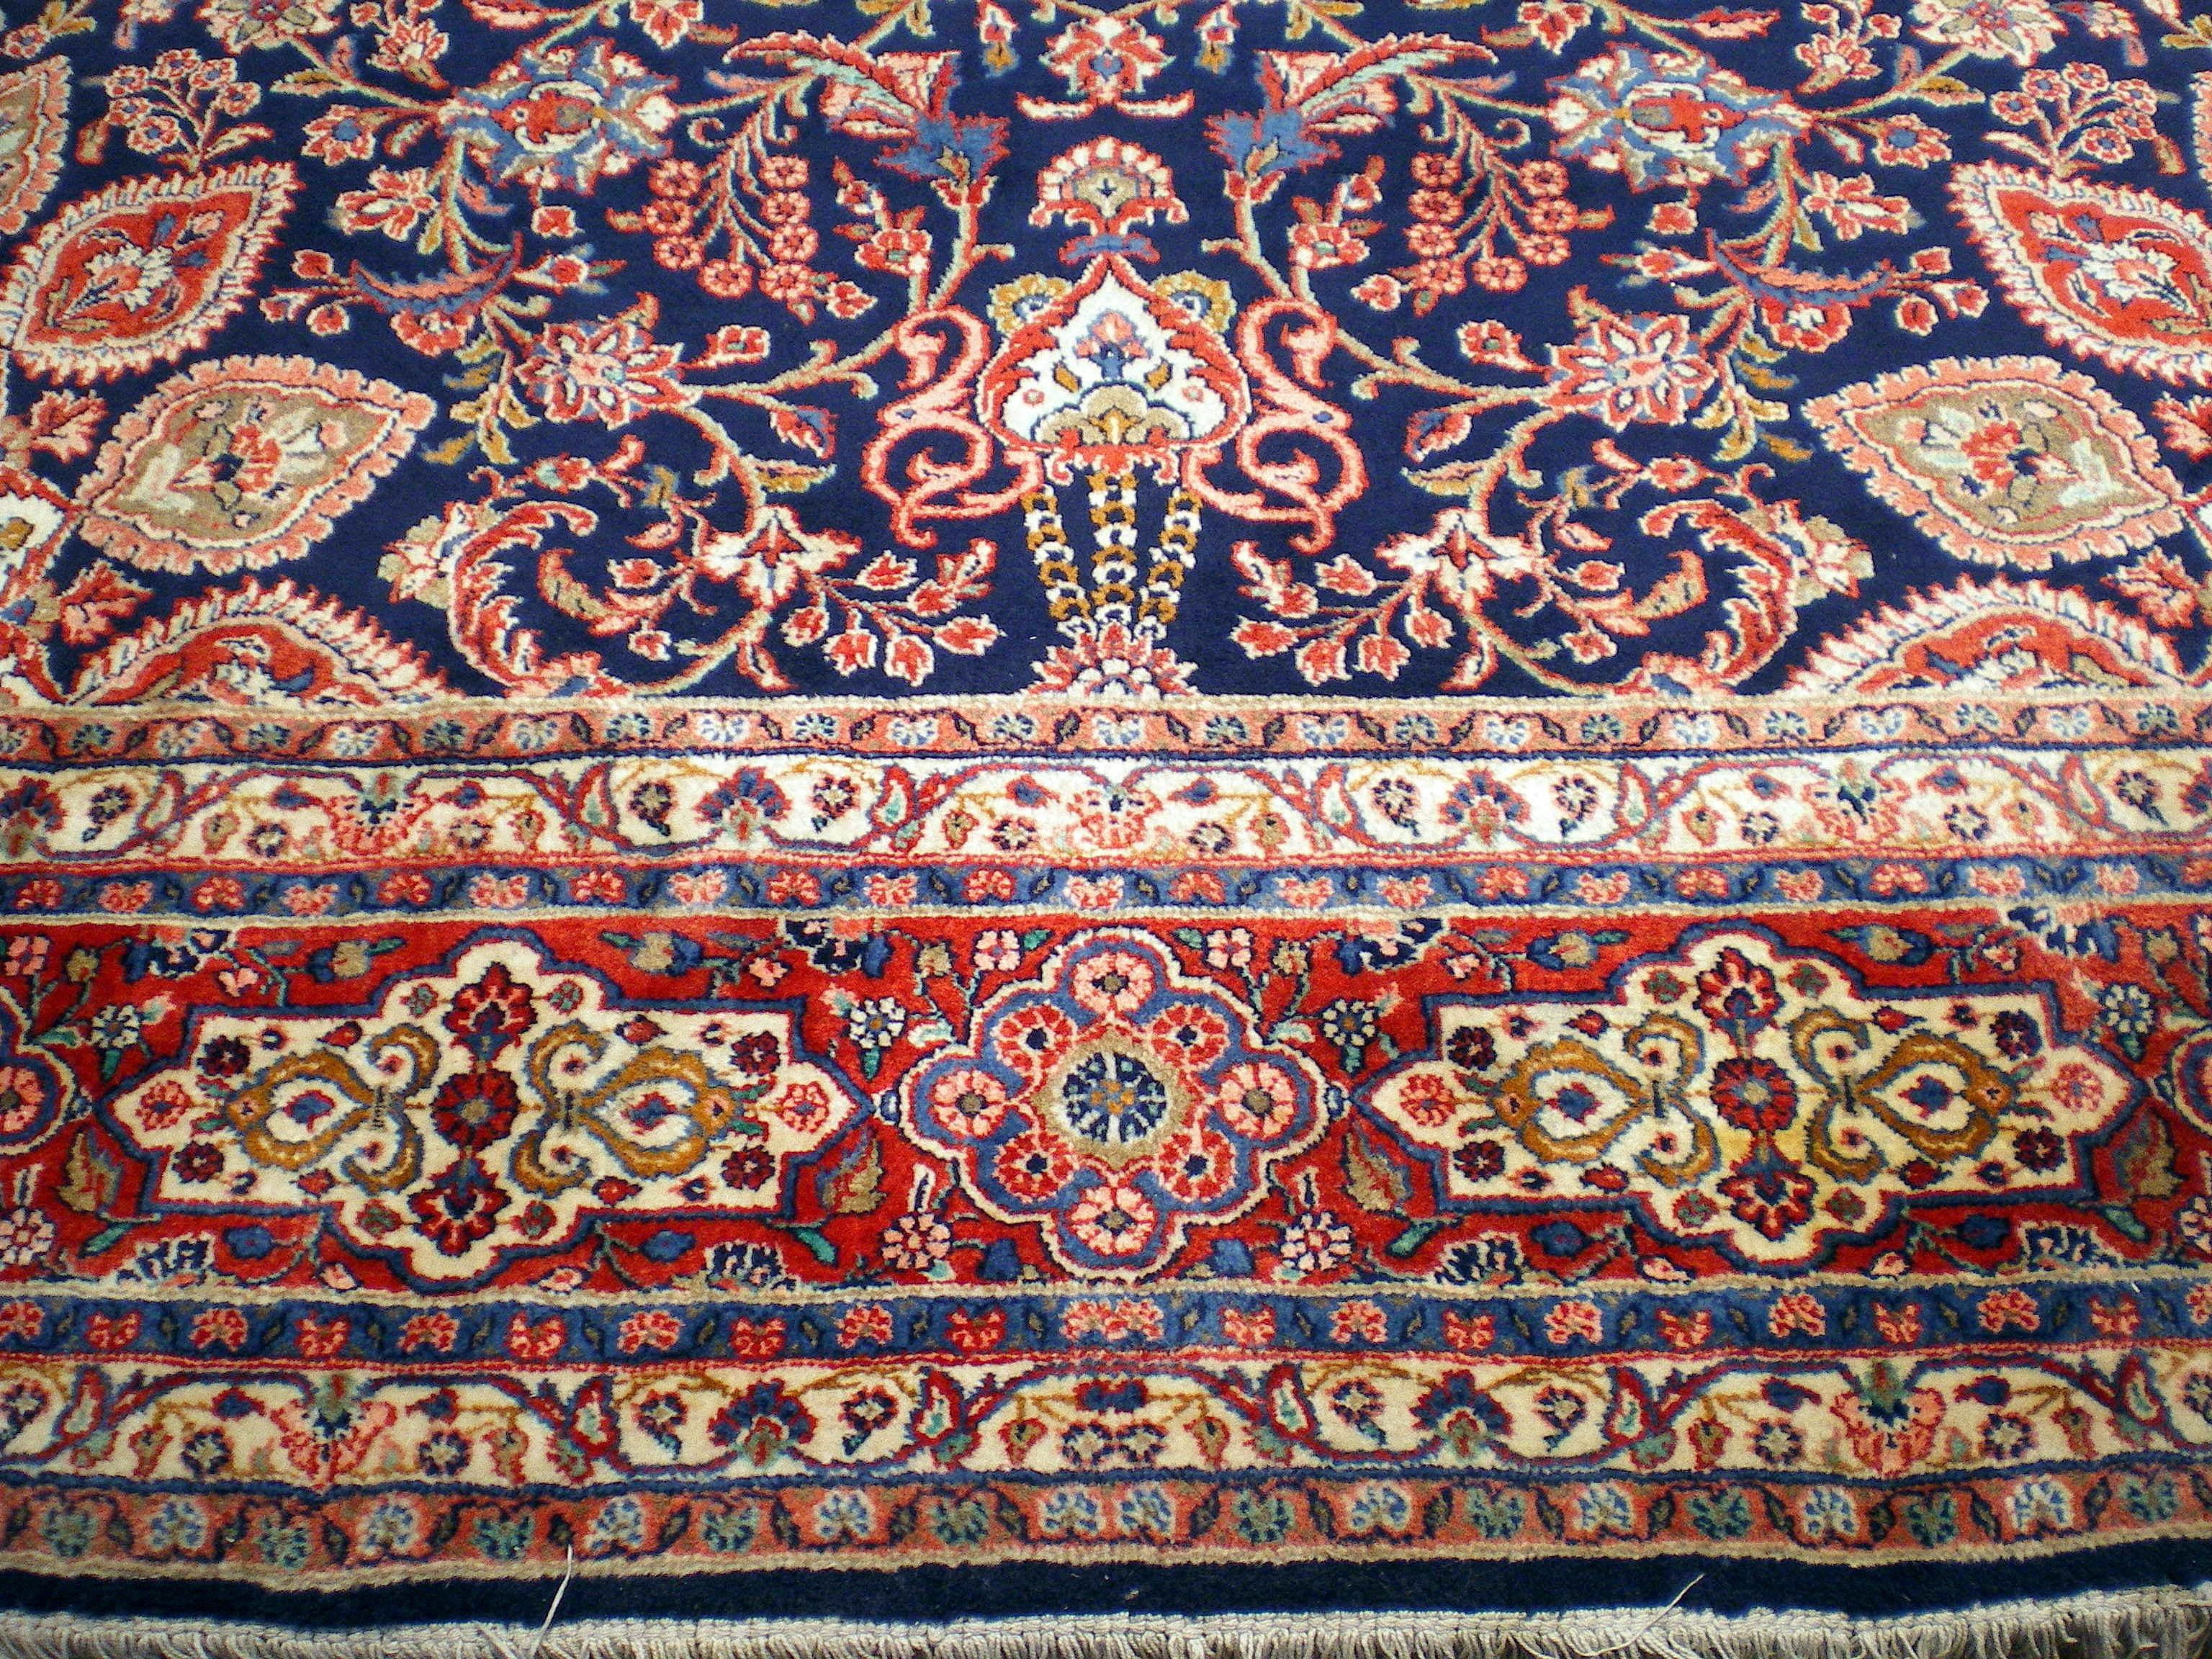 Vintage Persian Sarouk. Aus sehr hochwertiger Wolle gewebt.
Die Farben und Texturen sind im Laufe der Jahre weicher geworden. Für einen Weber würde dies einige Jahre in Anspruch nehmen. Dieses Exemplar hat ein Shahabbasi-Design, das auch als Ardabil